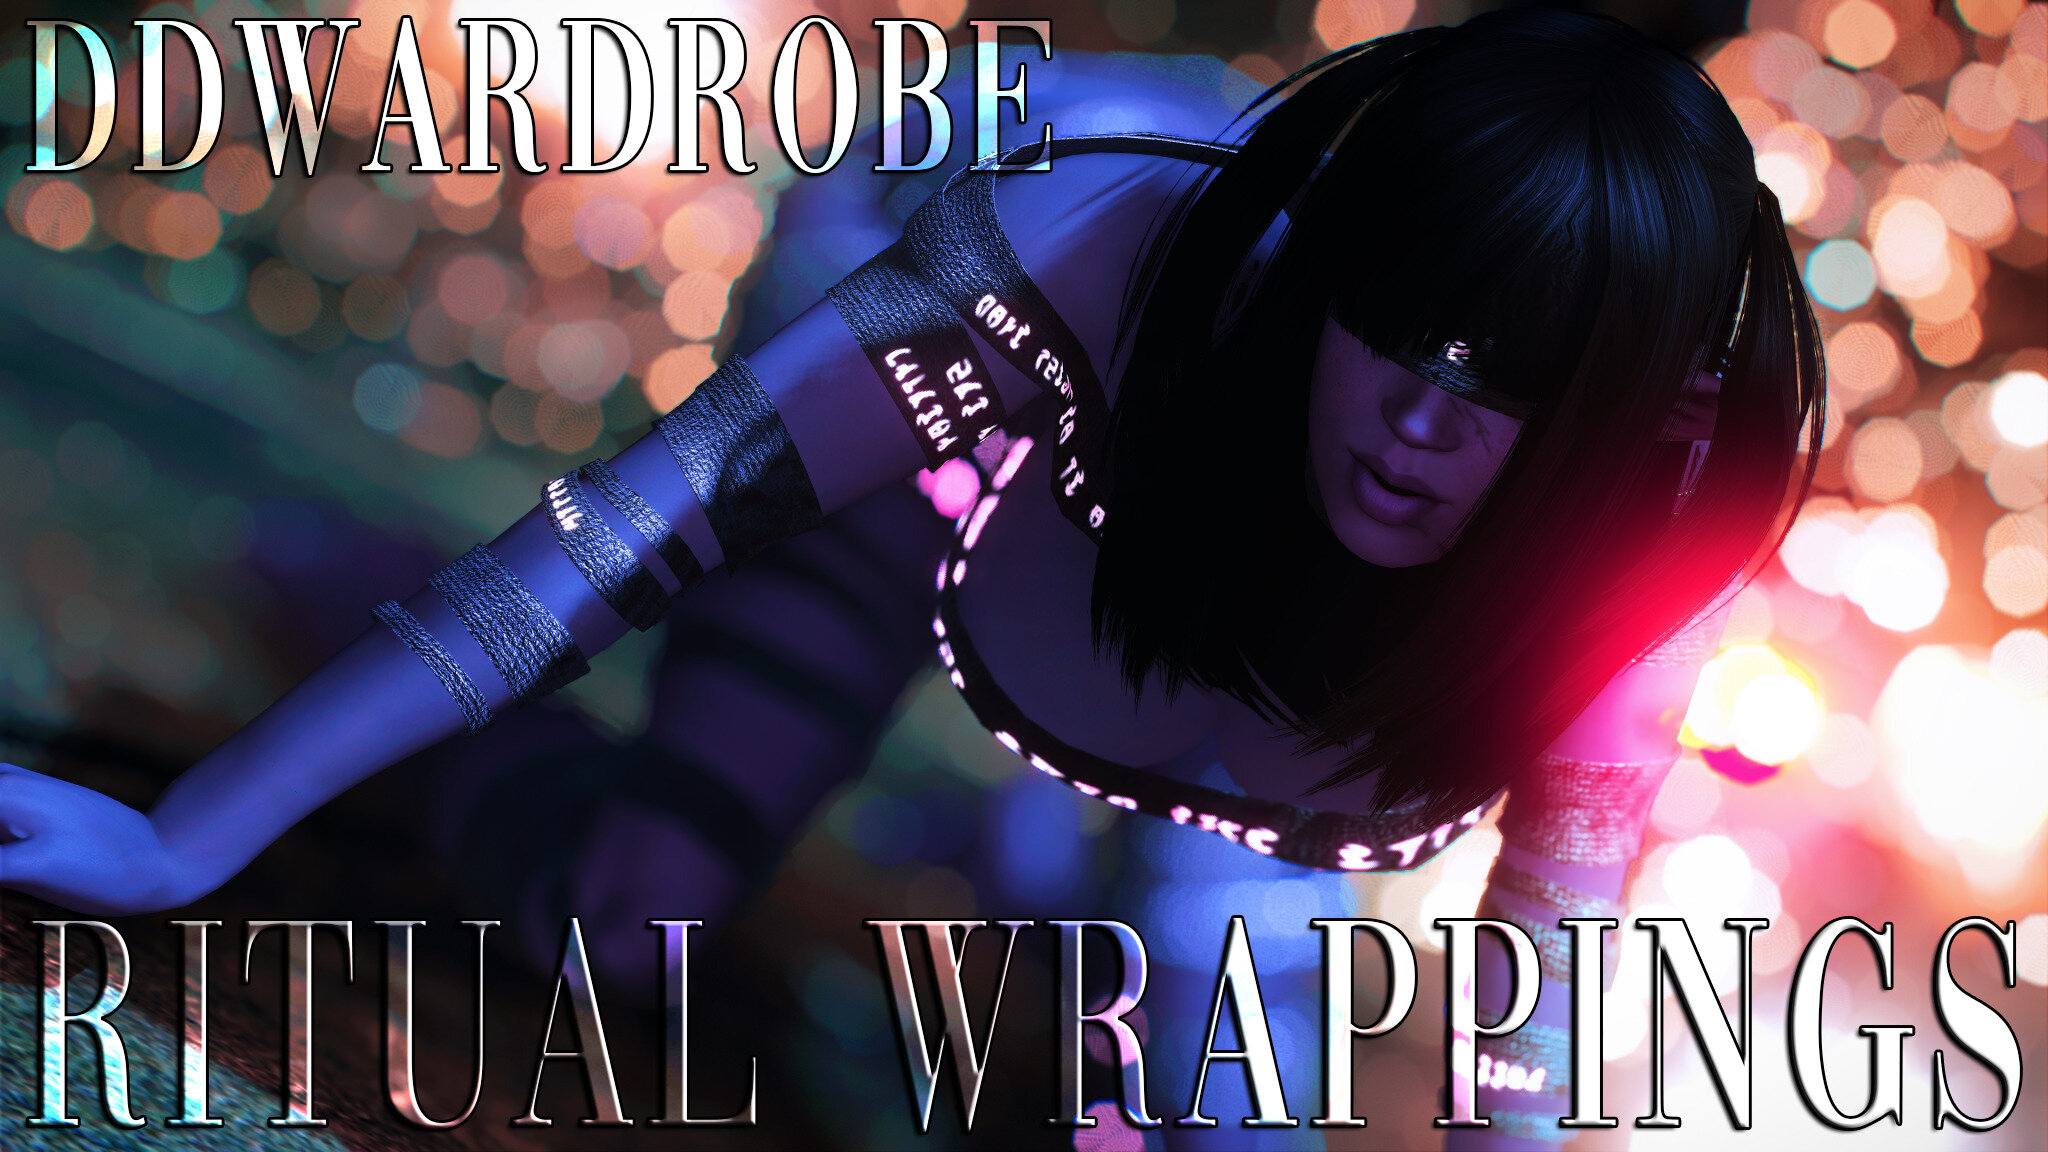 DDWardrobe - Ritual Wrappings (UNP-CBBE)